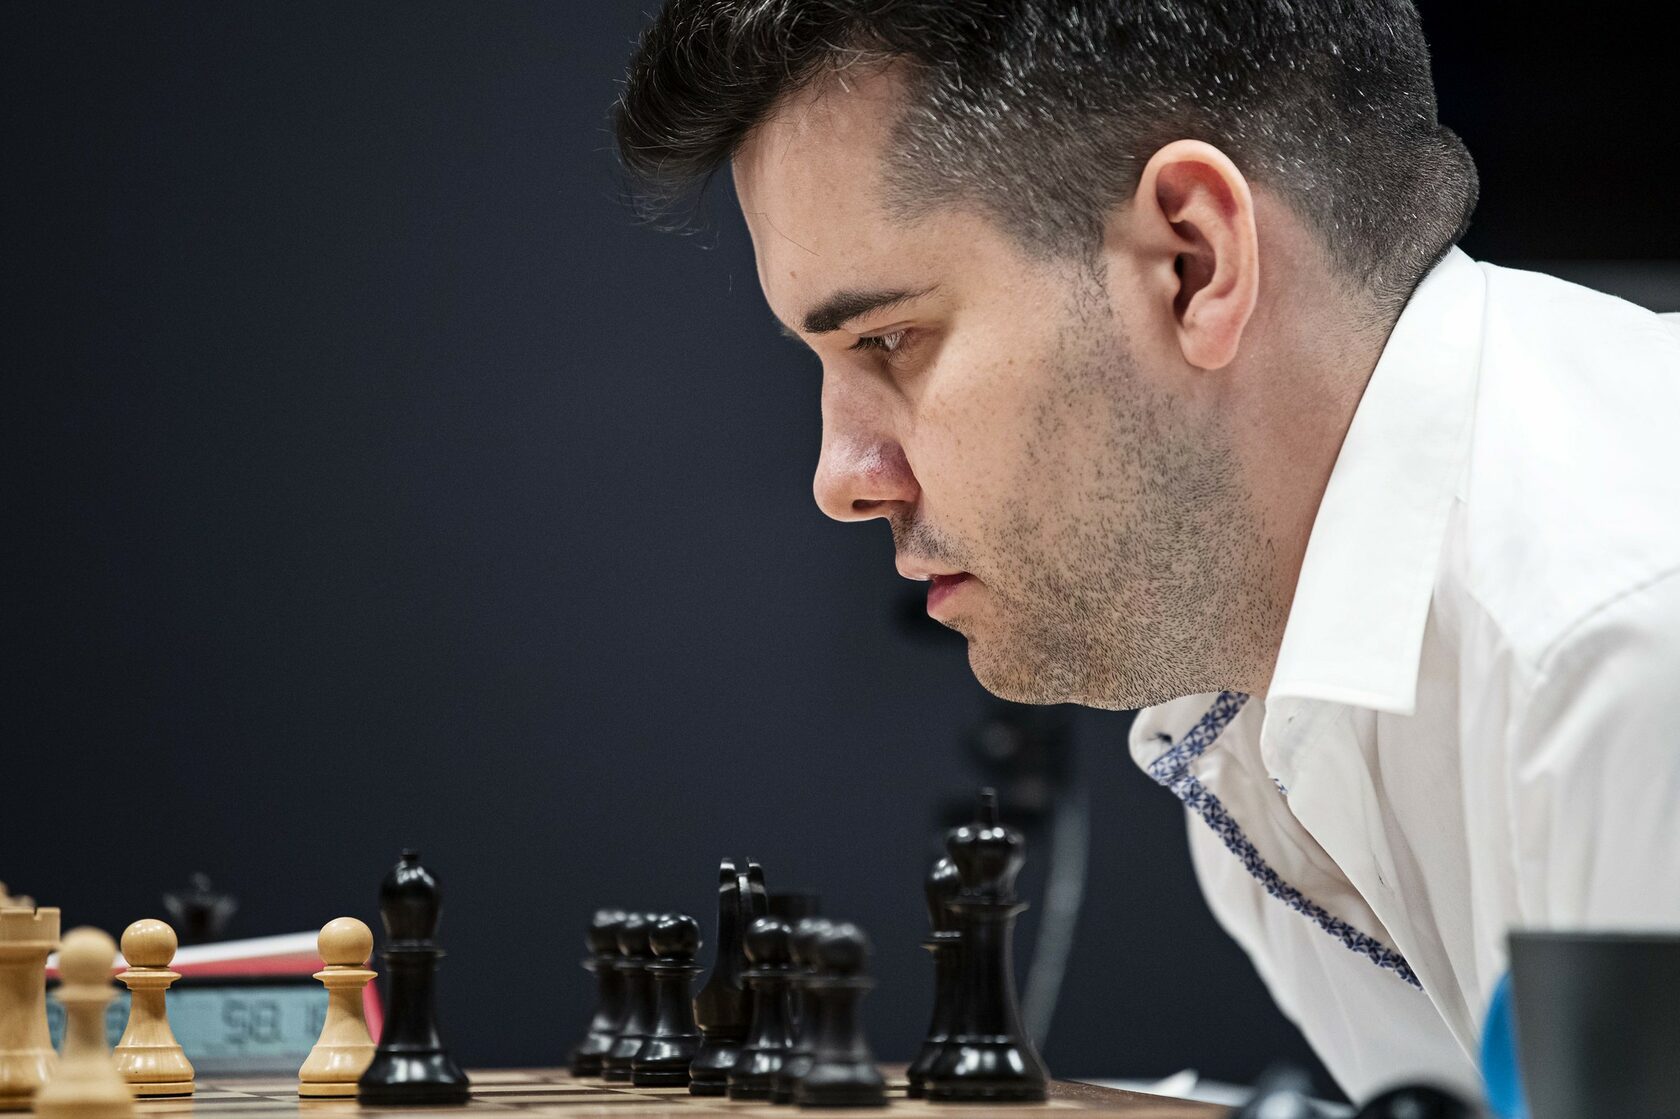 Richard Rapport vs Fabiano Caruana